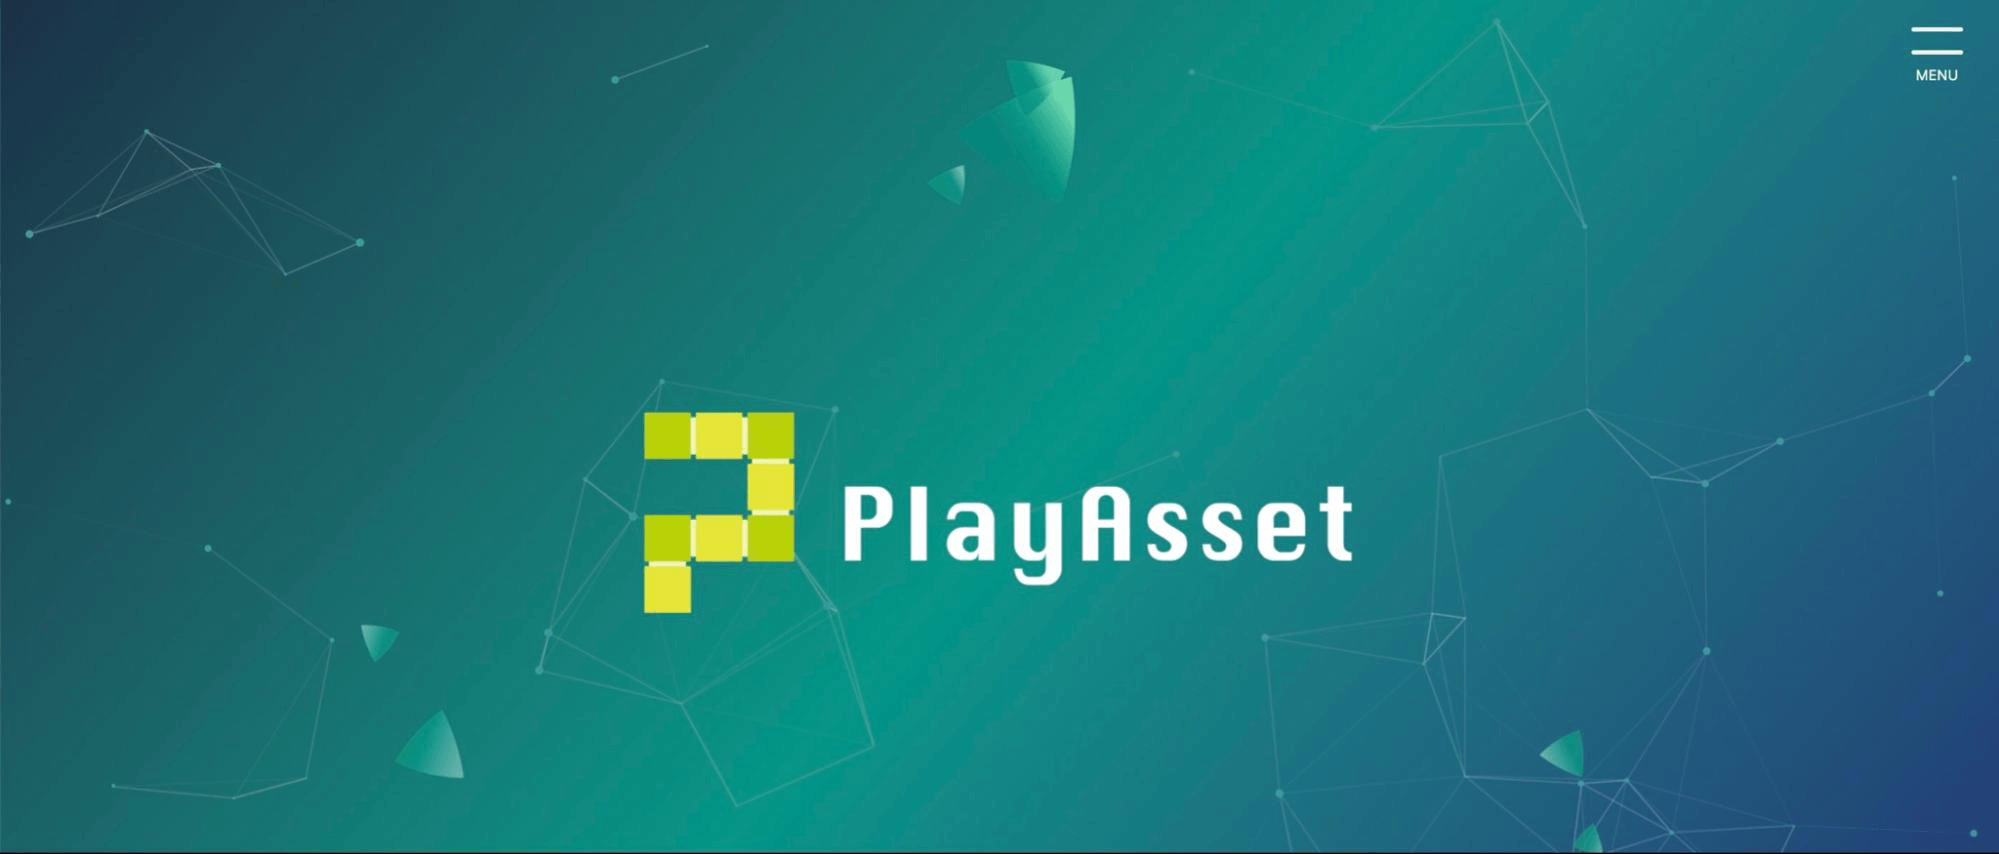 Play Asset